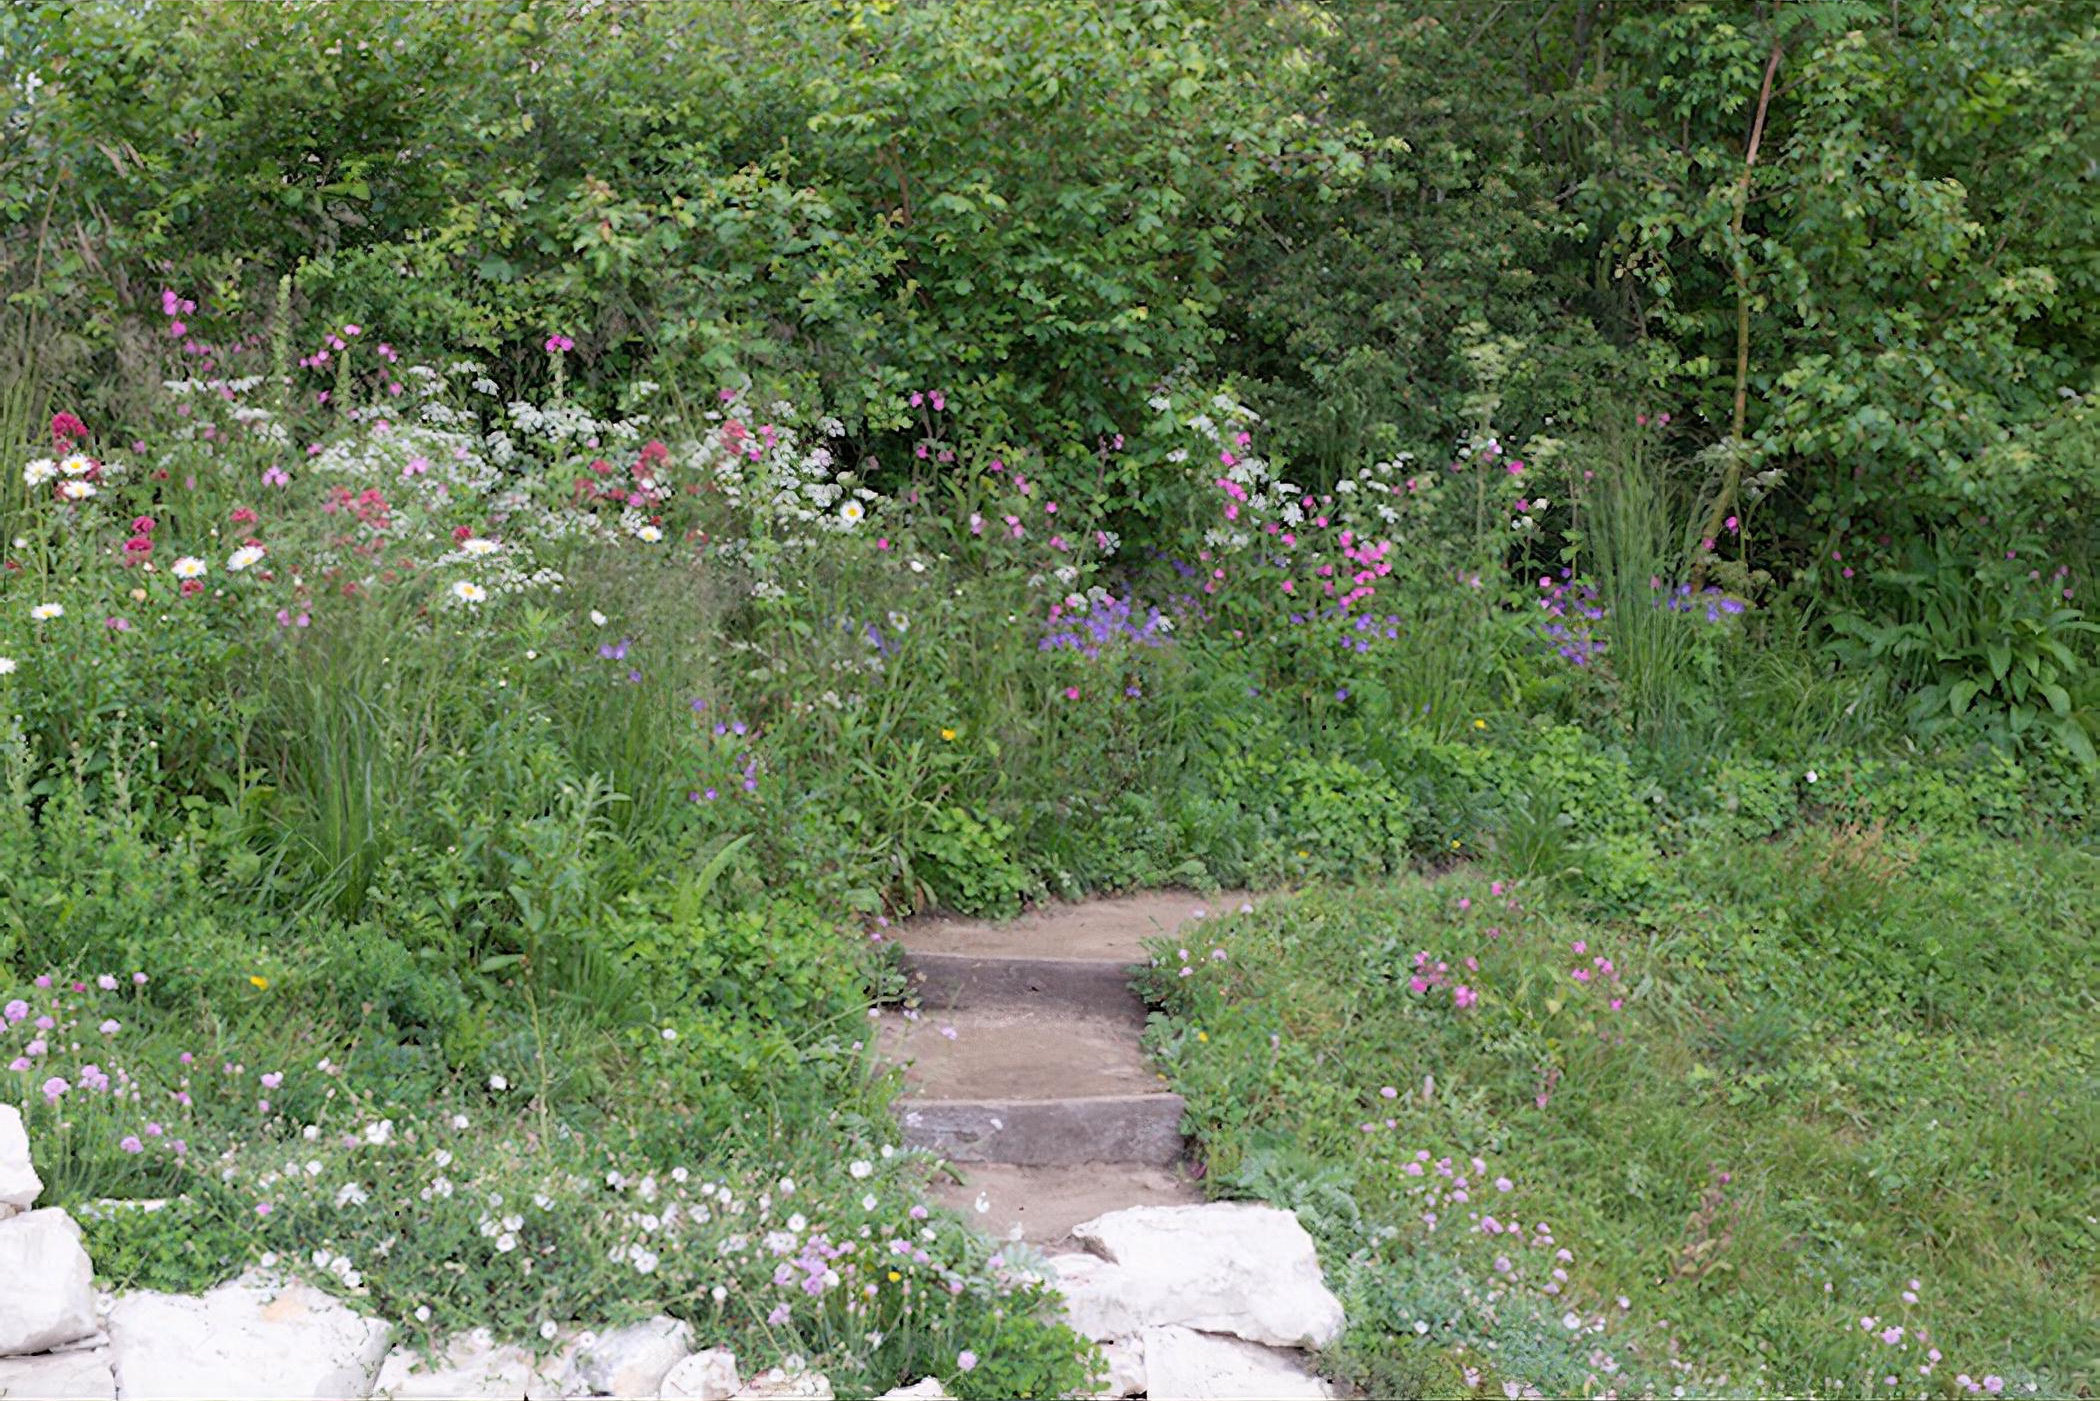 Welcome to Yorkshire Garden by garden designer Tracy Foster